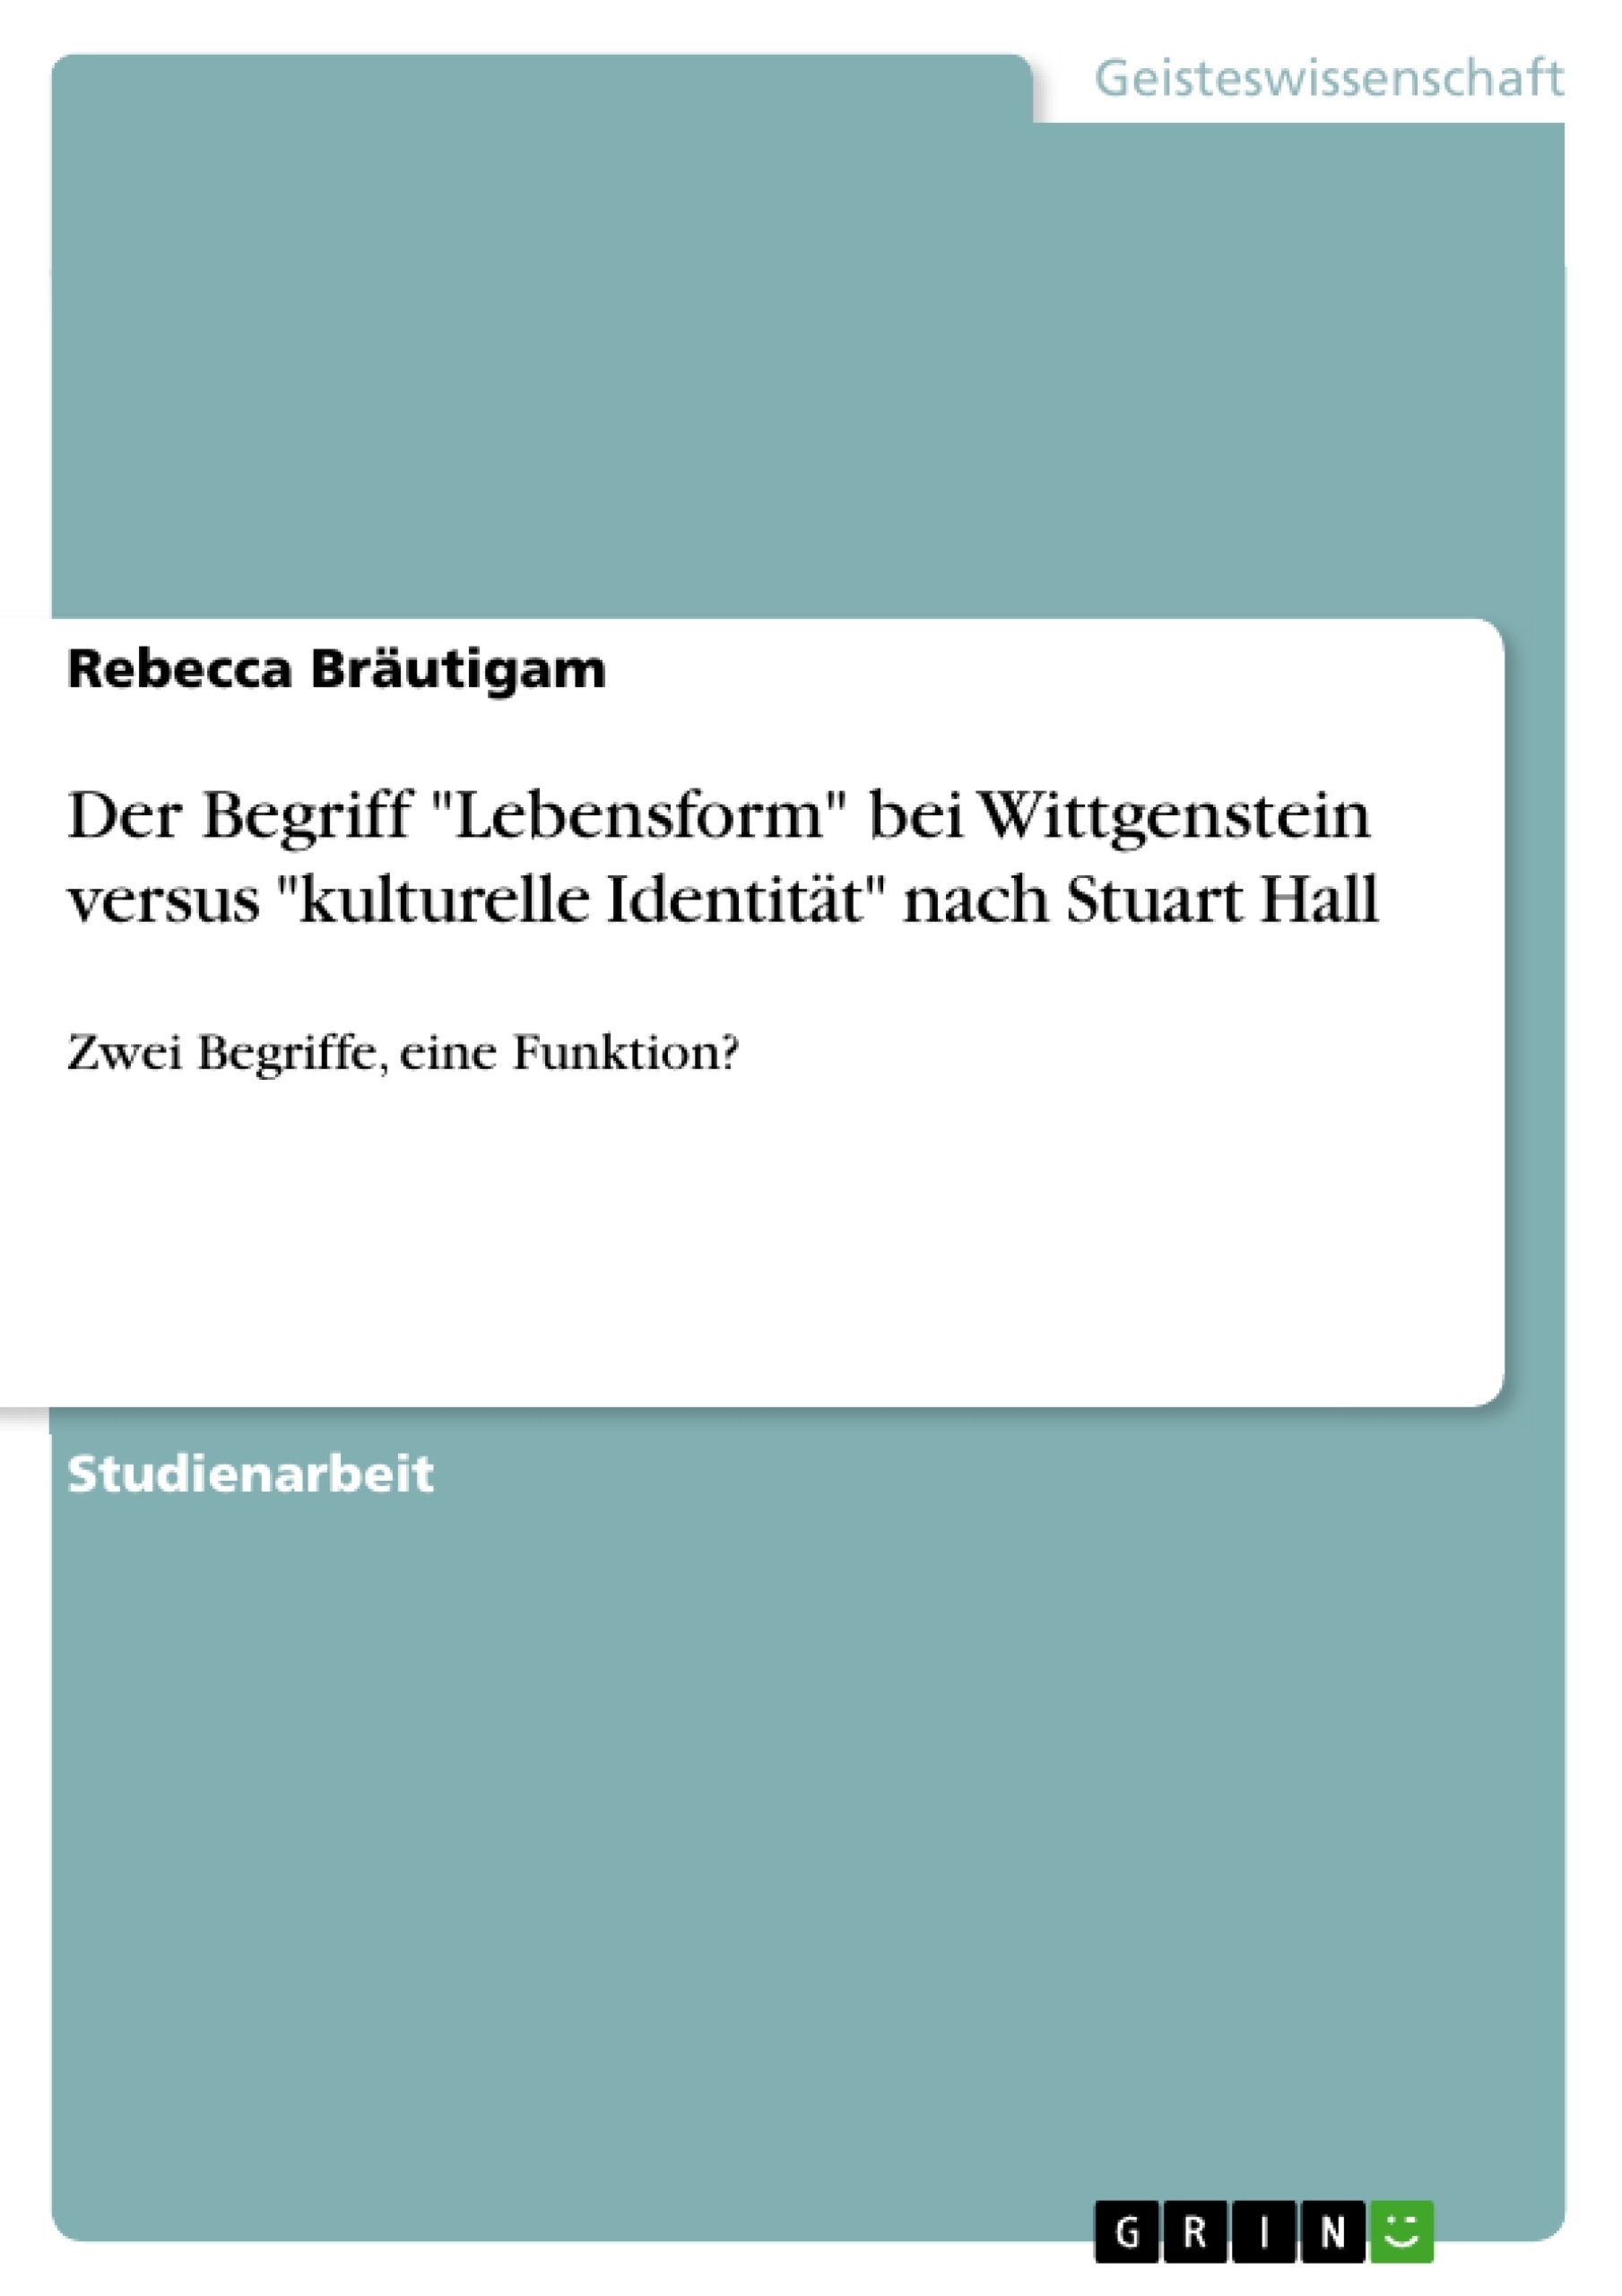 Title: Der Begriff "Lebensform" bei Wittgenstein versus "kulturelle Identität" nach Stuart Hall